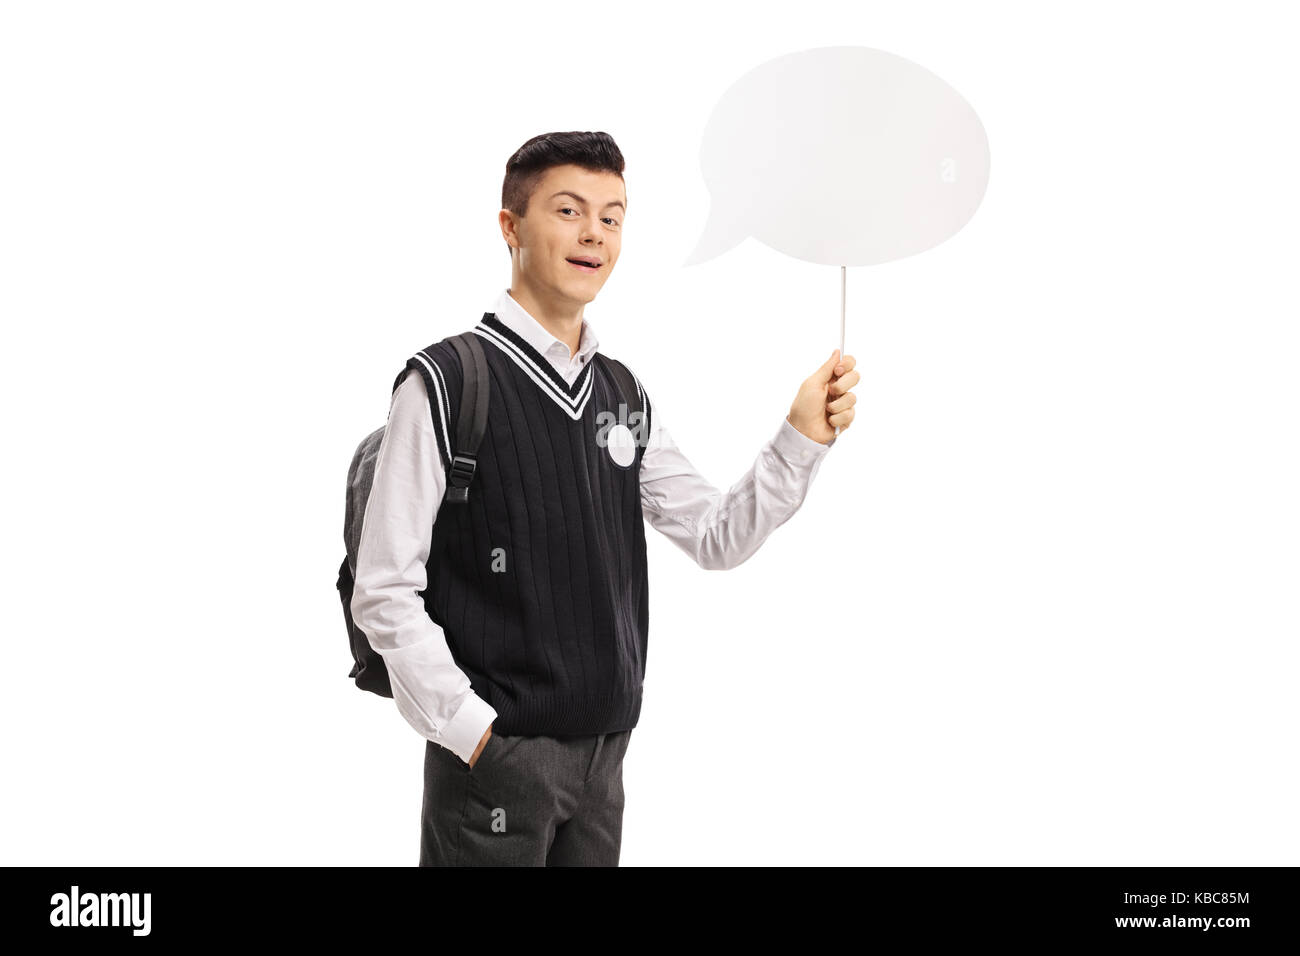 Teenage student dans un uniforme tenant une bulle chat isolé sur fond blanc Banque D'Images